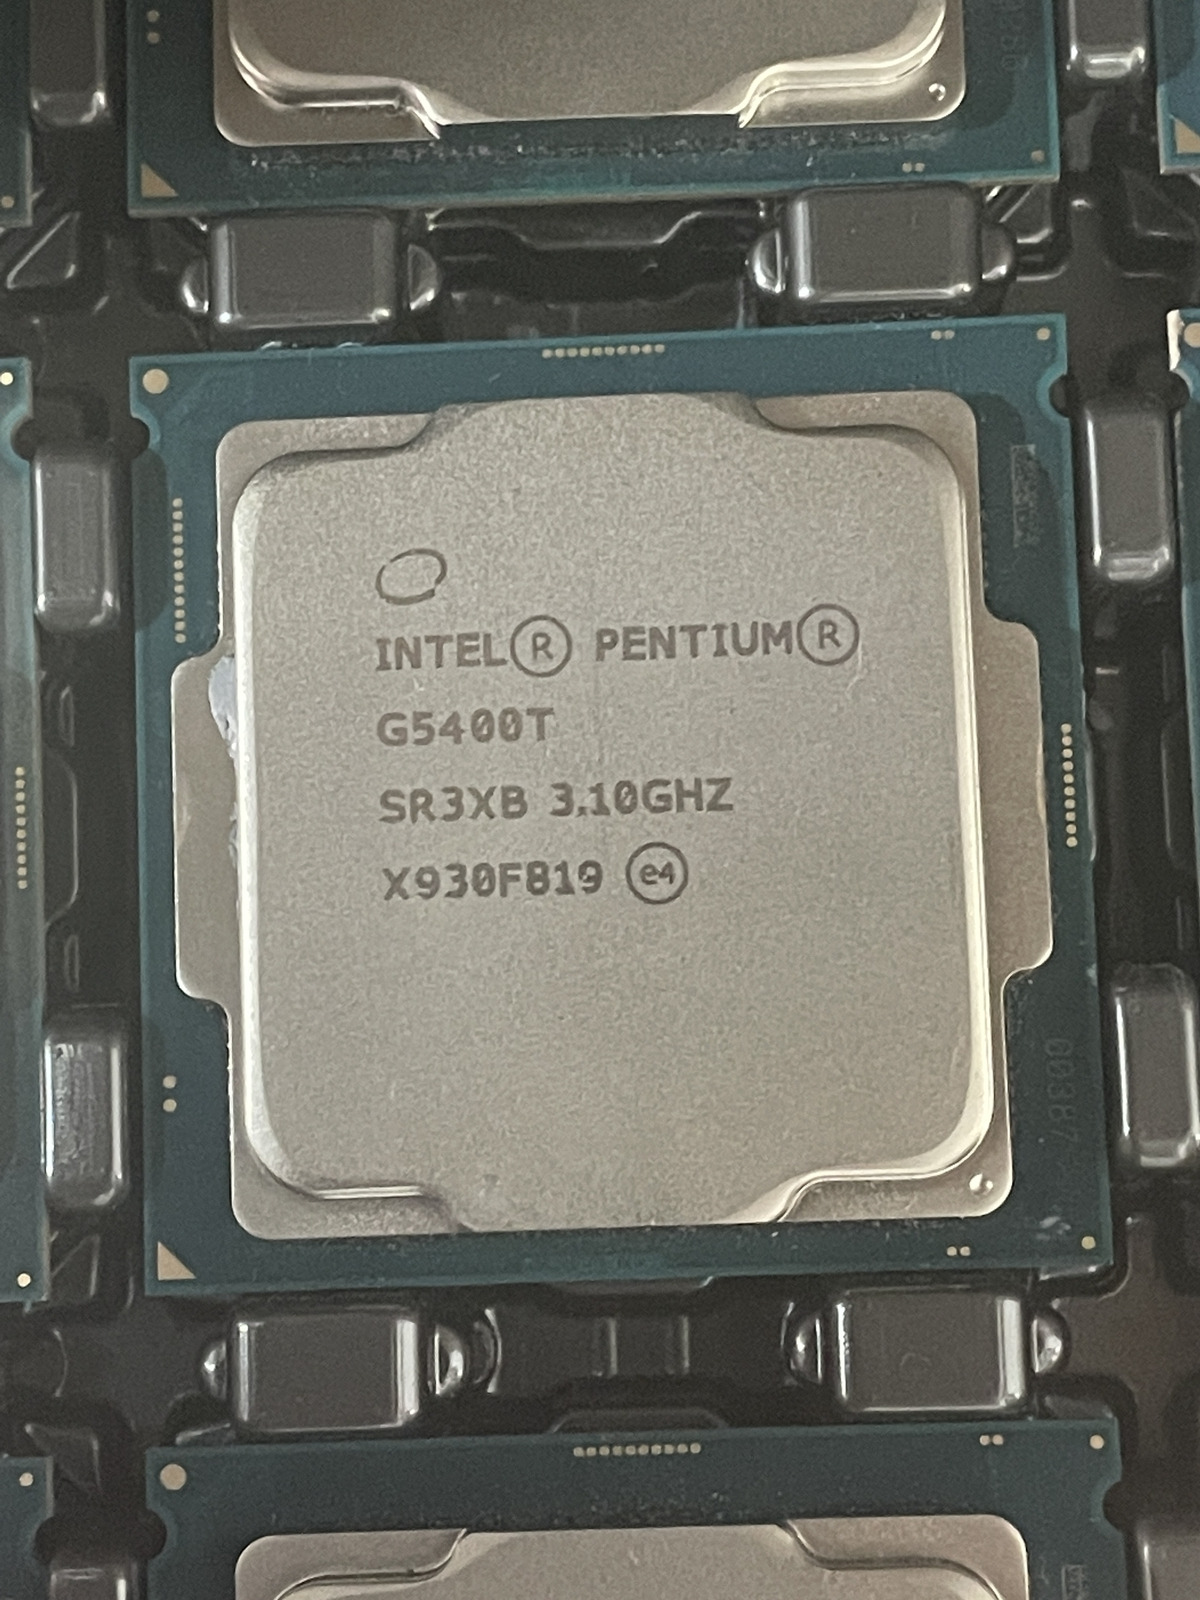 Lot of 8 Intel Pentium G5400T 3.10GHz 4MB SR3XB CPU Processor